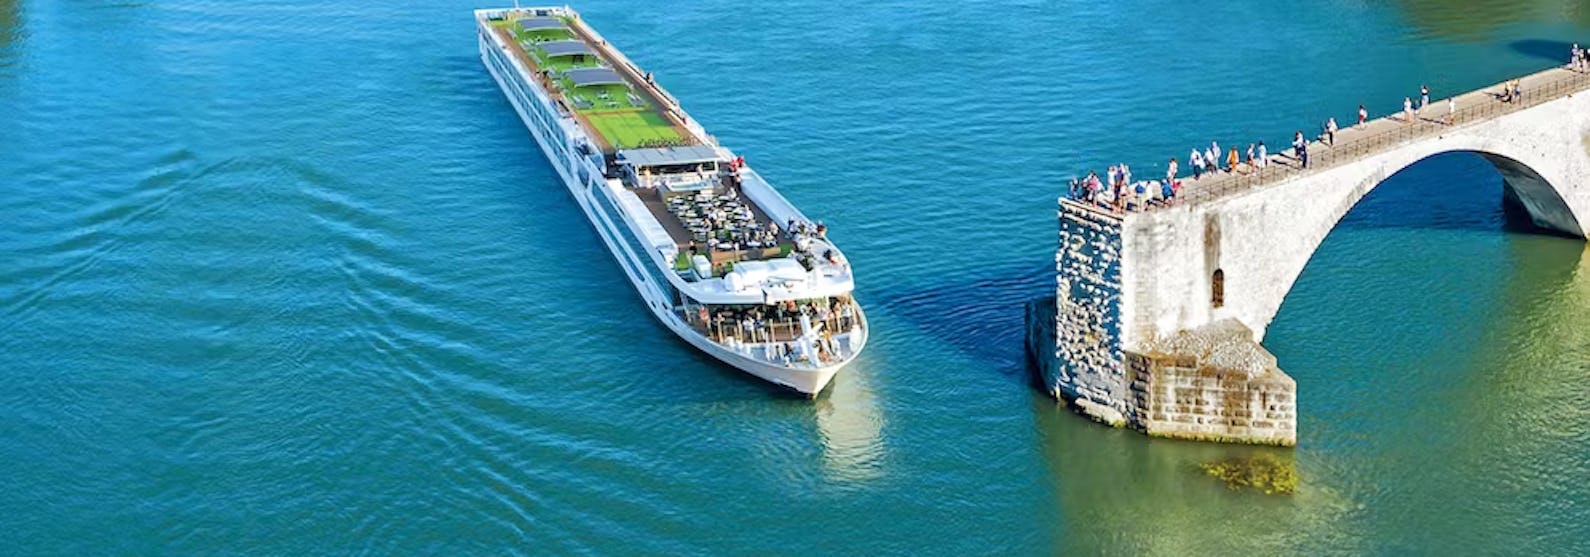 Flusskreuzfahrtschiff Scenic Jade während der Fahrt